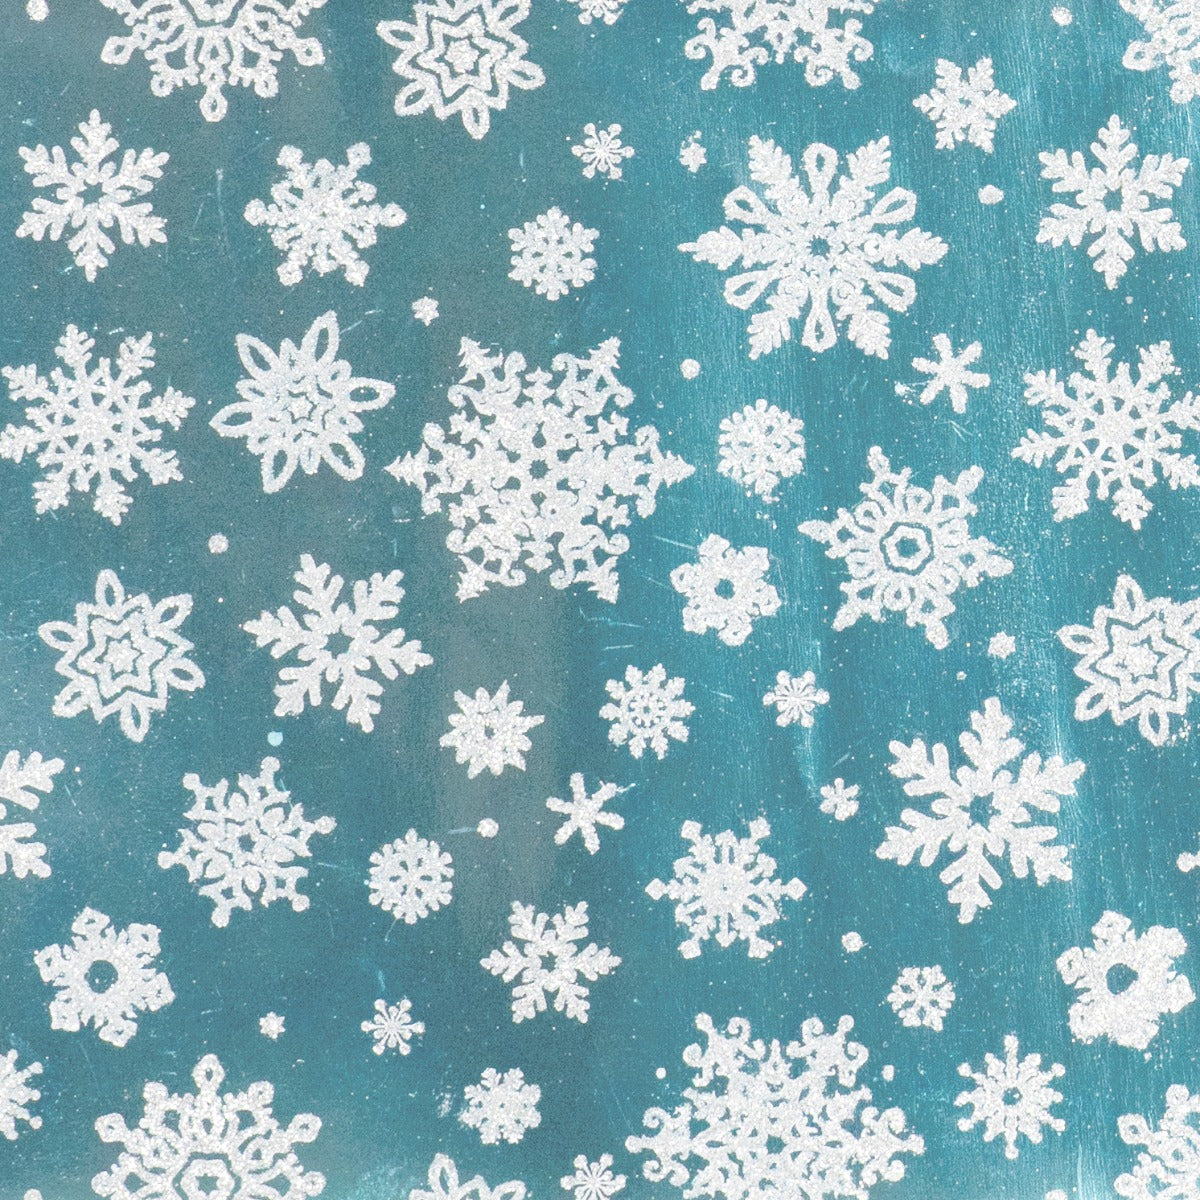 Finlandia Delicate Snowflake Silver on Ice Blue 